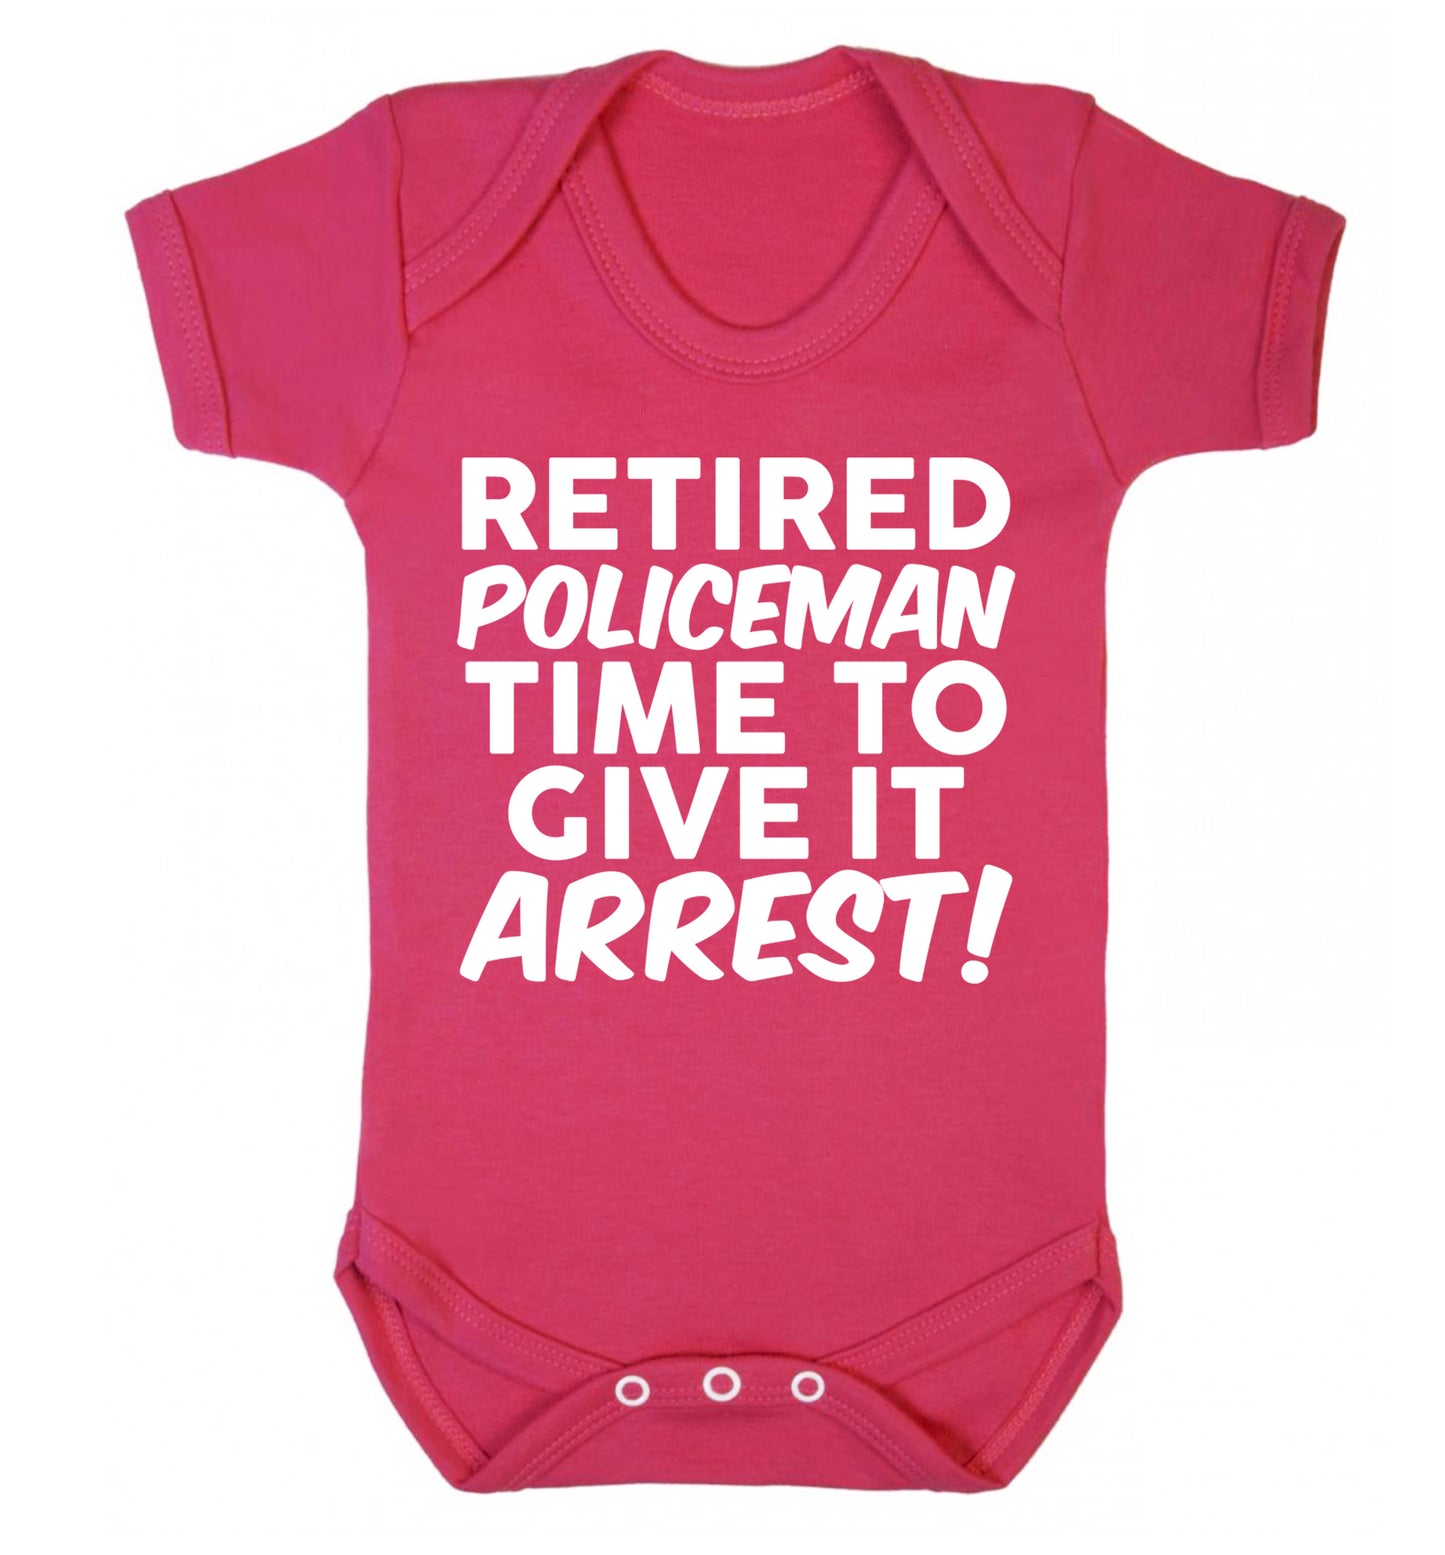 Retired policeman give it arresst! Baby Vest dark pink 18-24 months